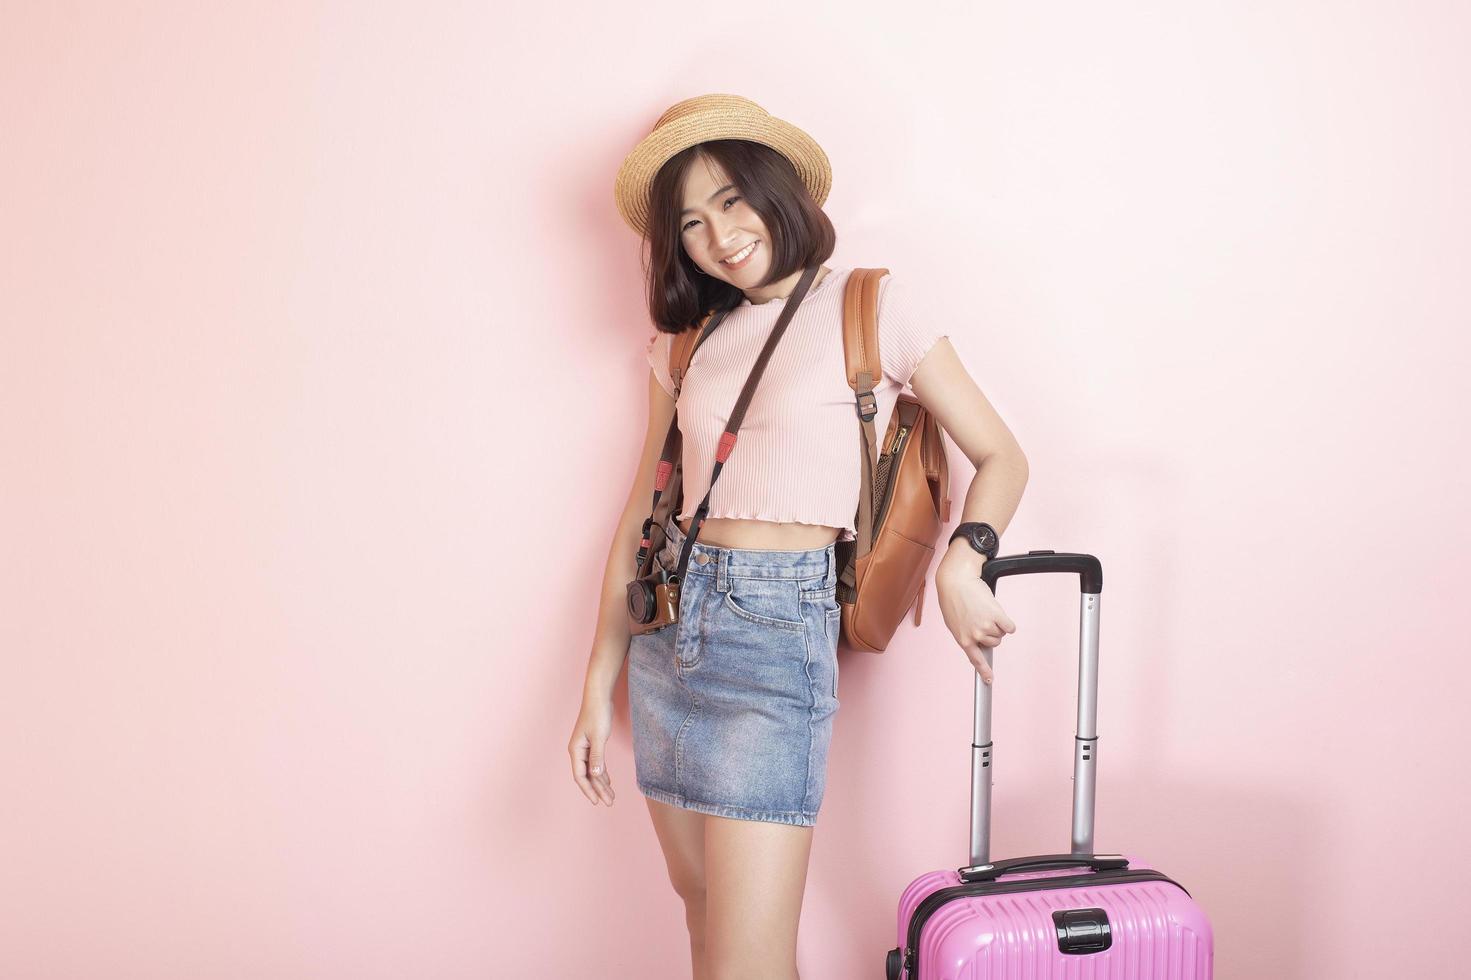 felice turista asiatico su sfondo rosa foto